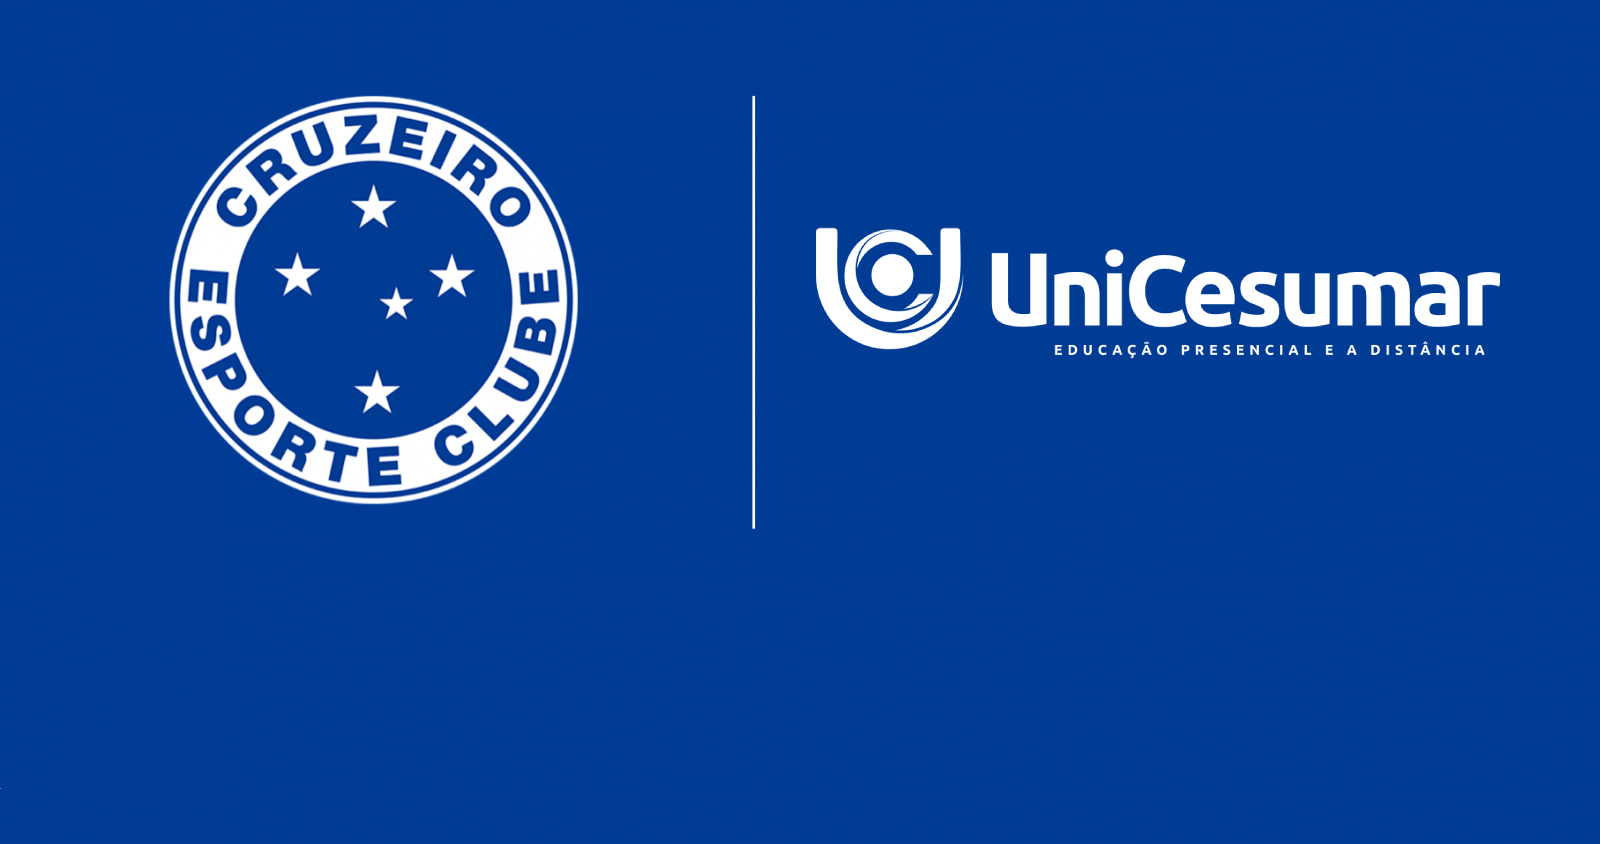 Referência em educação presencial e a distância, UniCesumar é a mais nova parceira do Cruzeiro